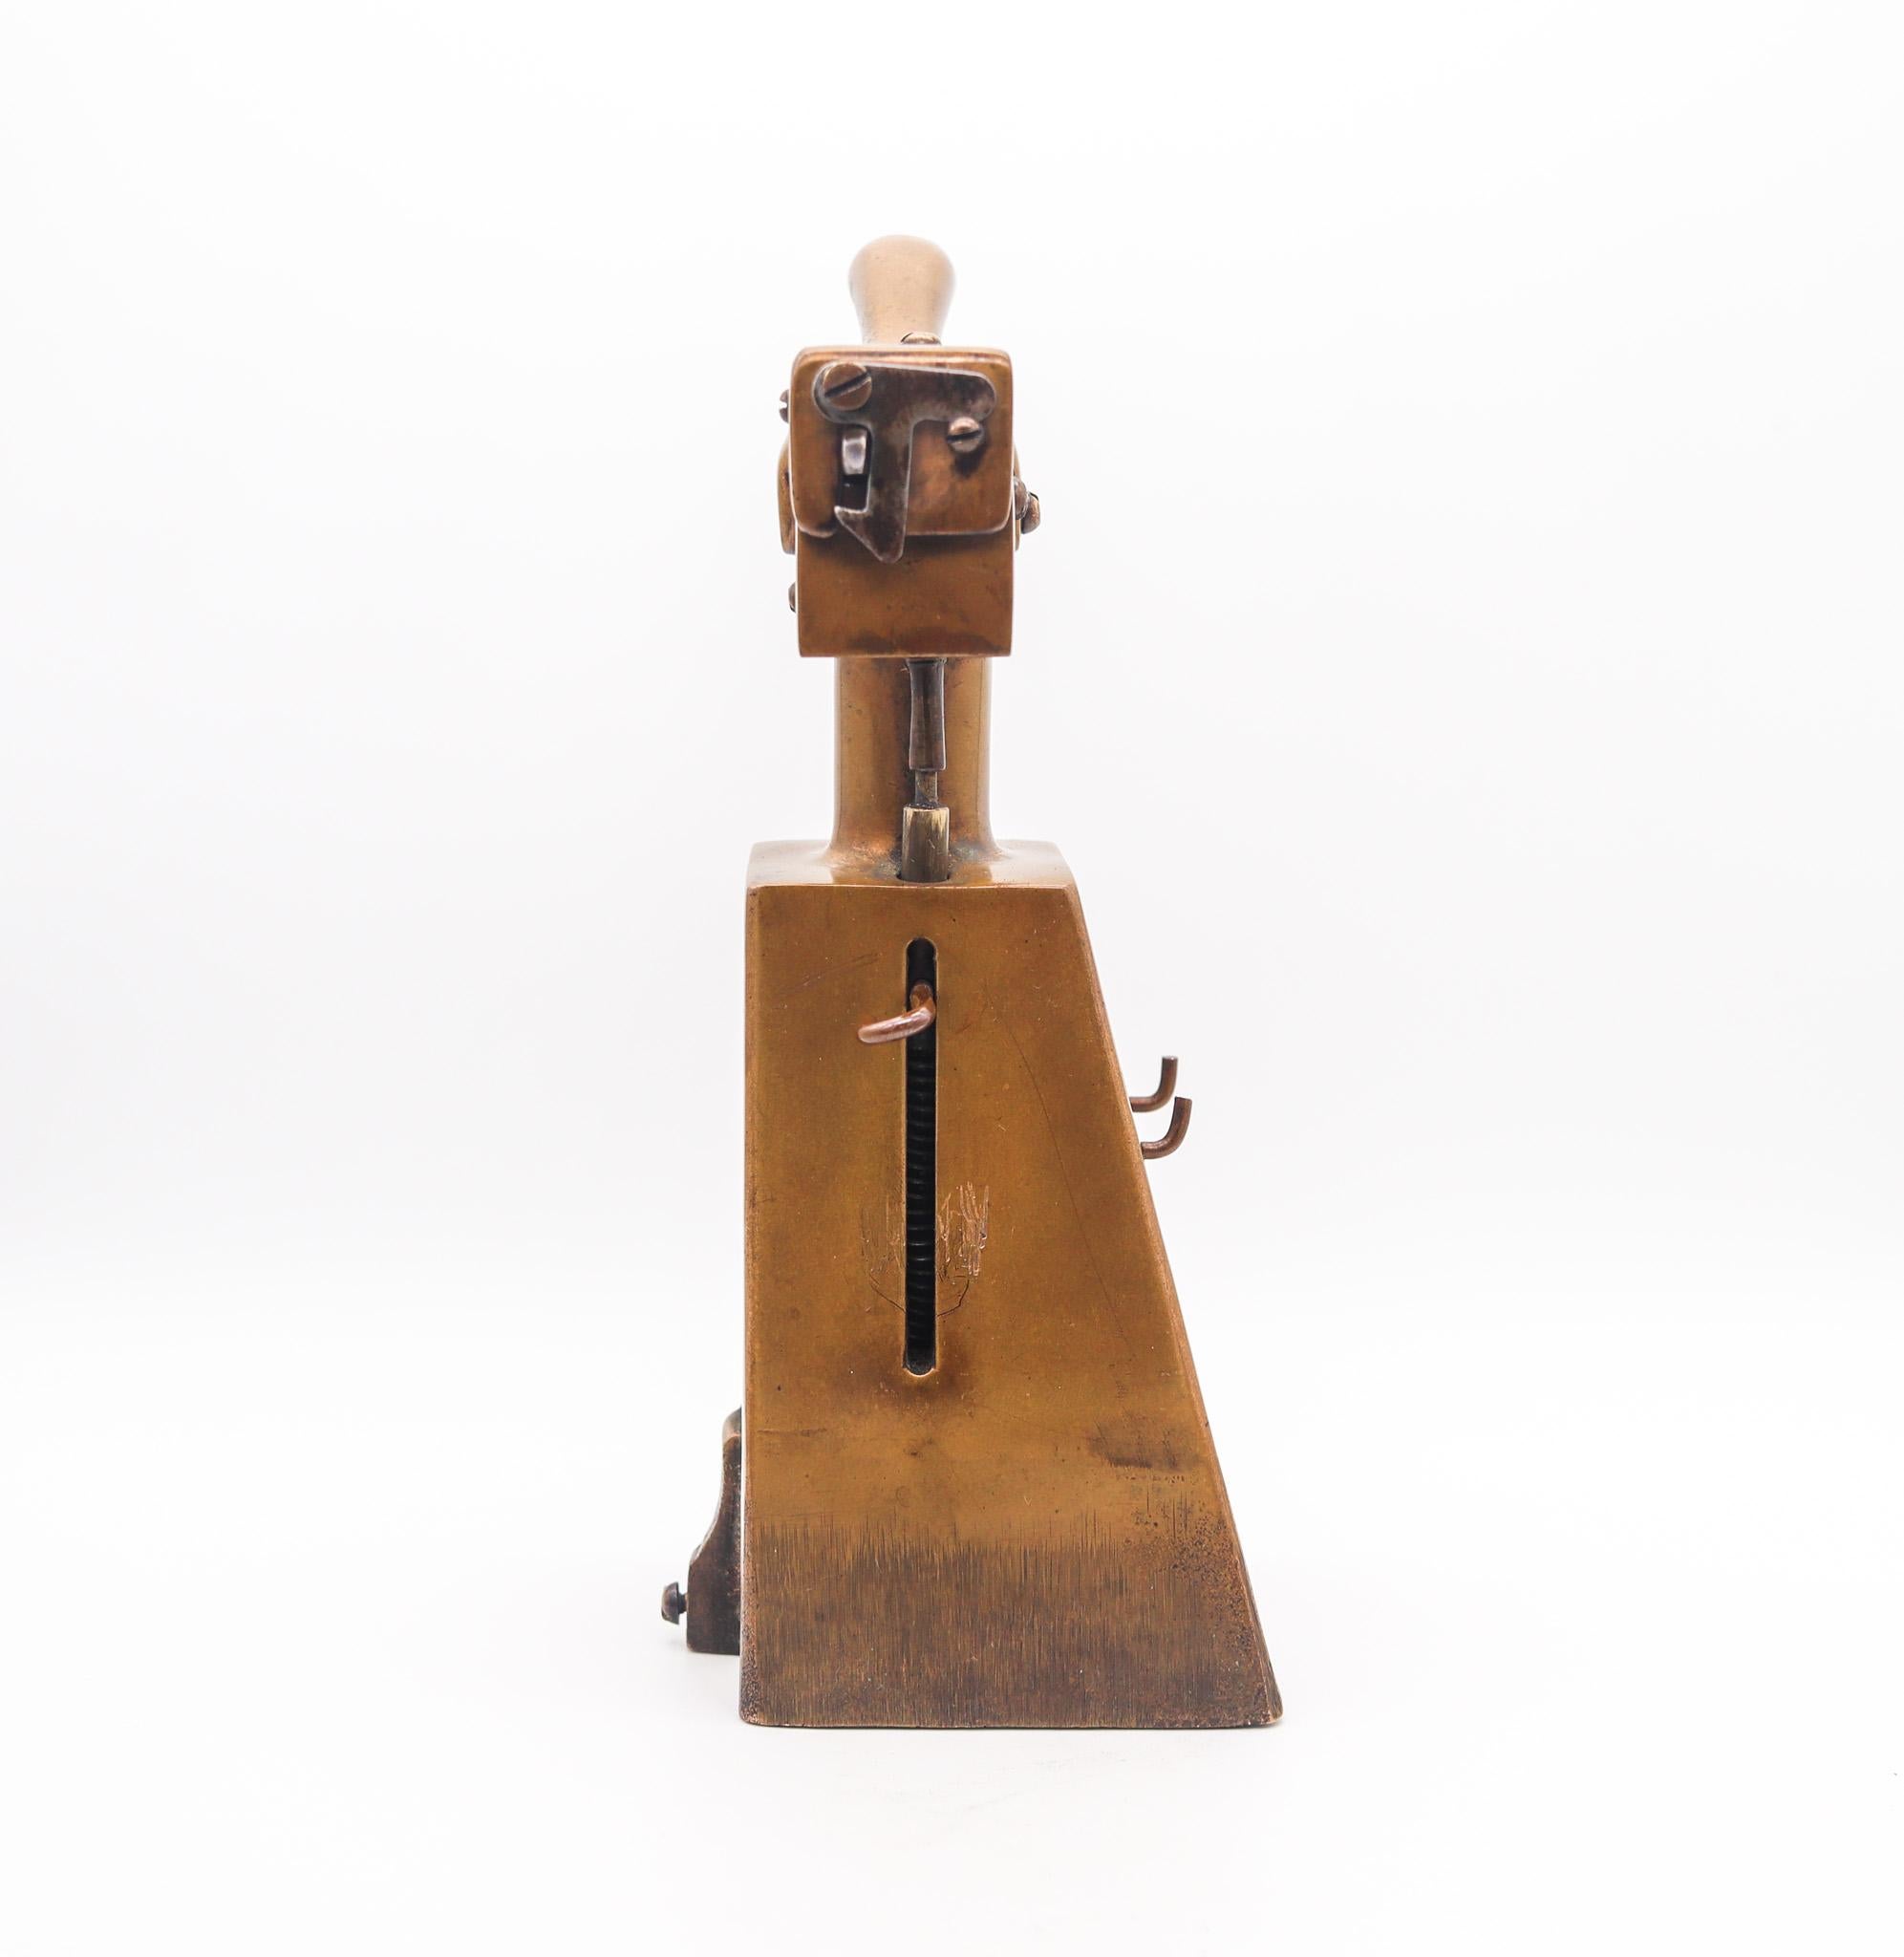 Briquet de table conçu par Samuel E. Ghinn.

Il s'agit d'un superbe et très rare briquet à essence semi-automatique de table, créé à Cincinnati Ohio par Samuel E. Ghinn, en 1923. Ce briquet a été fabriqué au S.E. Guinn Mfg. Co. avec des motifs